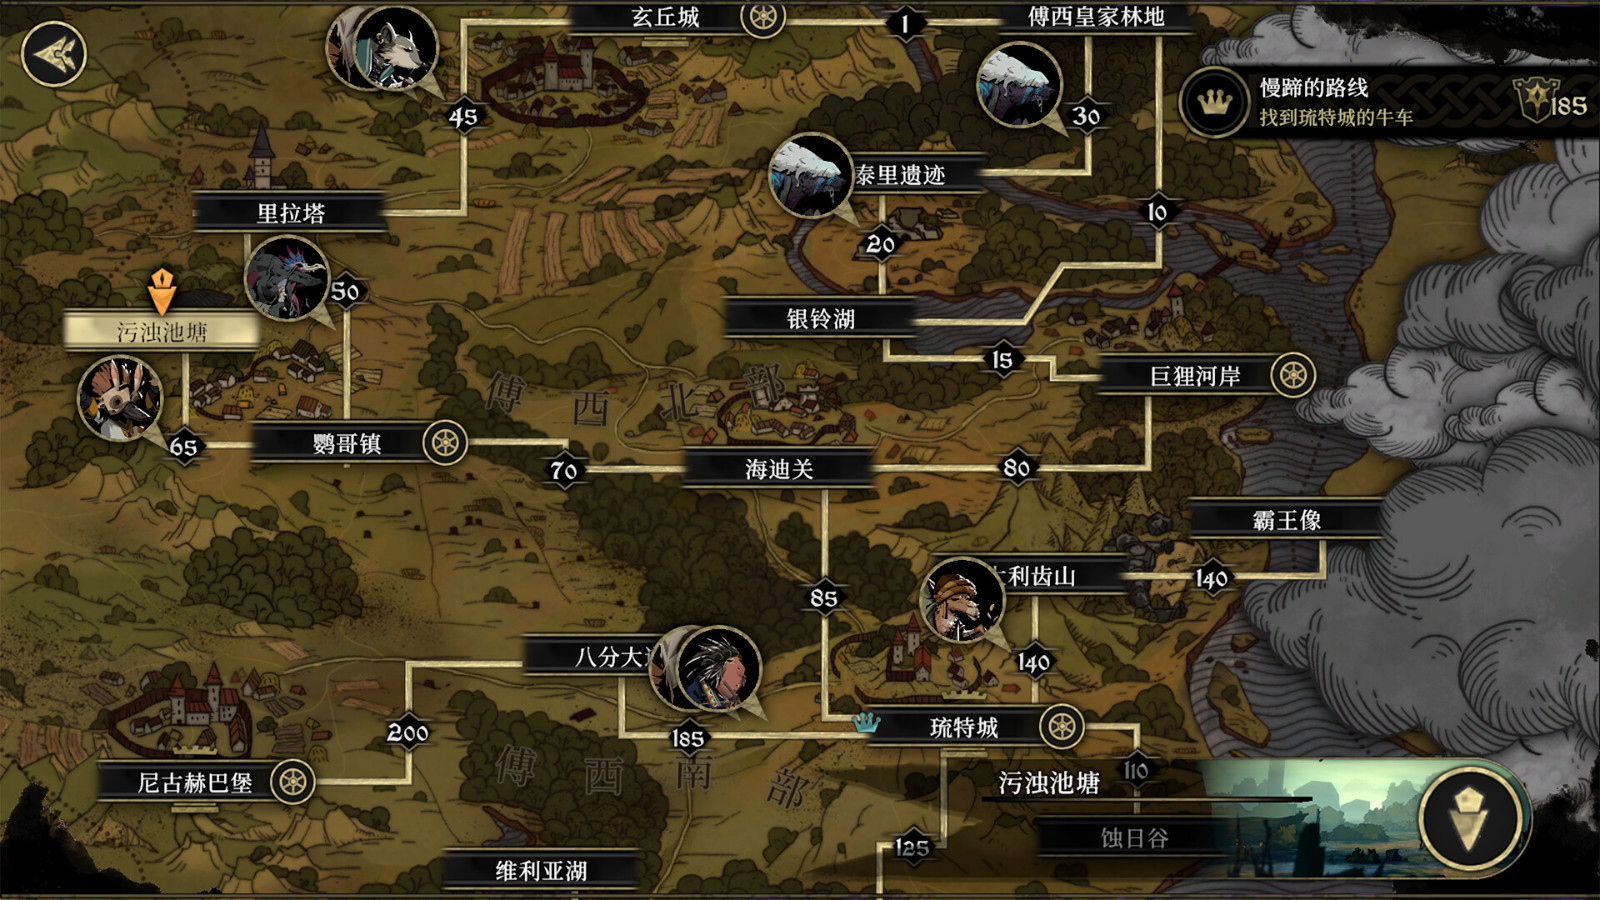 高难度植物拟人RPG游戏《安尼姆的无尽旅途》Steam页面上线 反对于简体中文